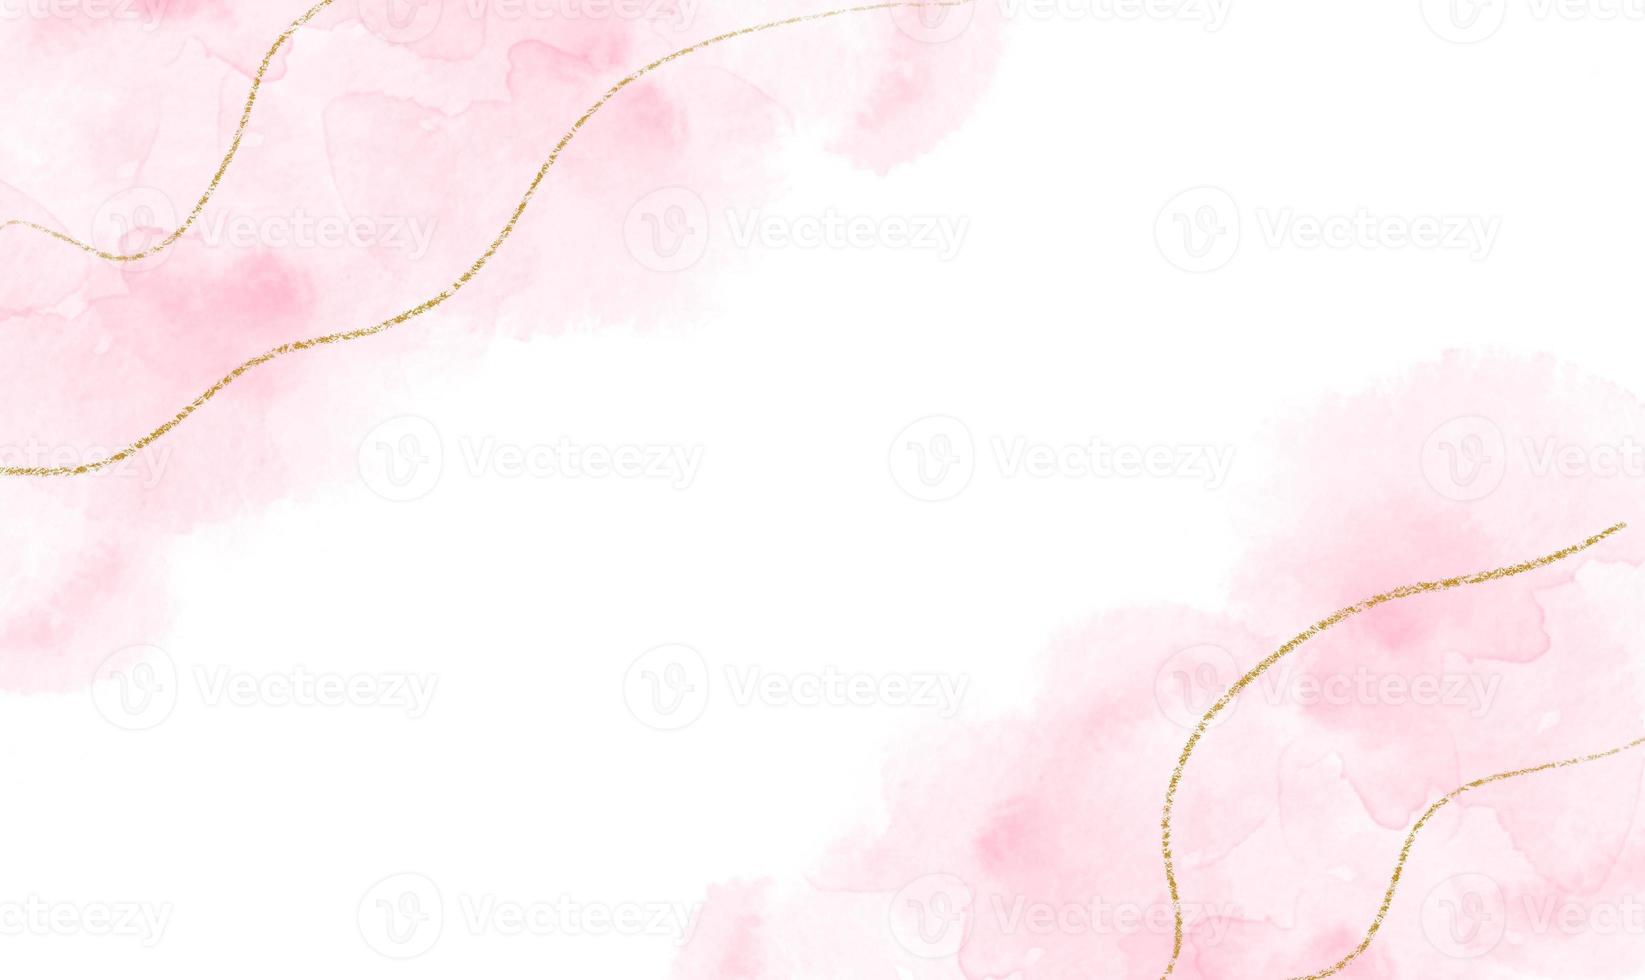 Fondos Rosa Y Blanco acuarela rosa abstracta o arte de tinta de alcohol con brillo dorado de fondo  blanco. efecto